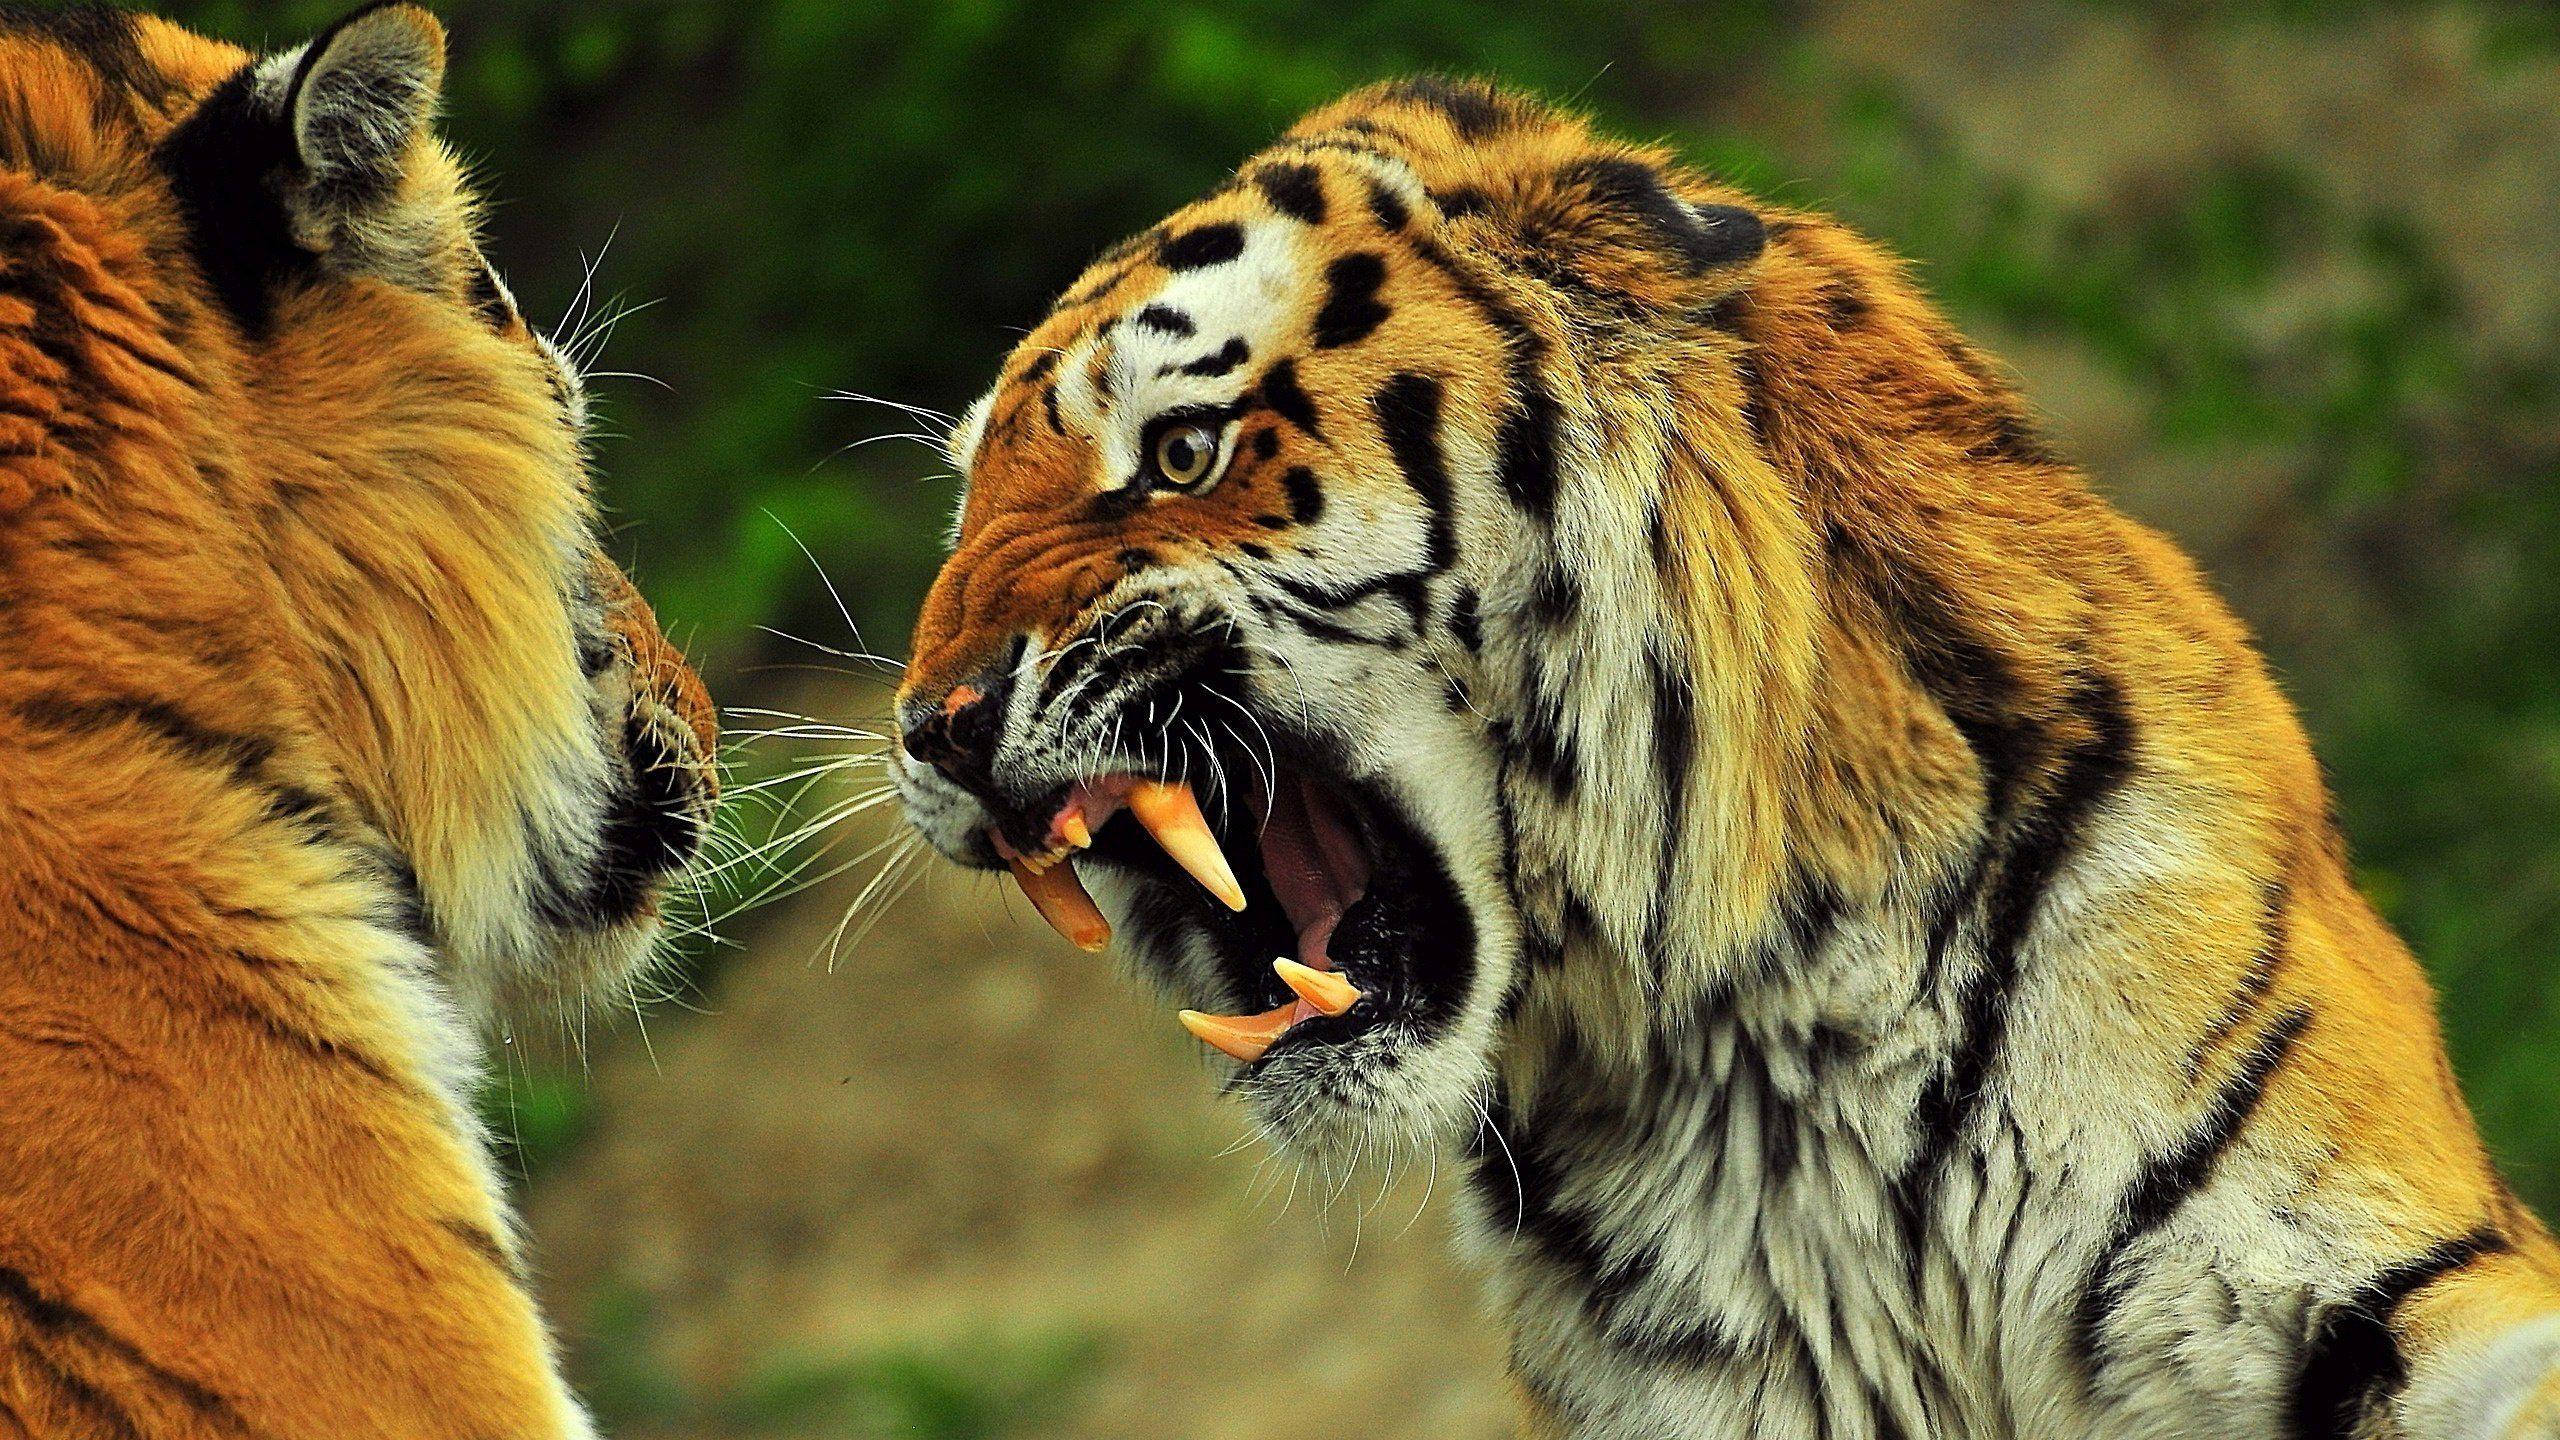 Angry Tiger 879623